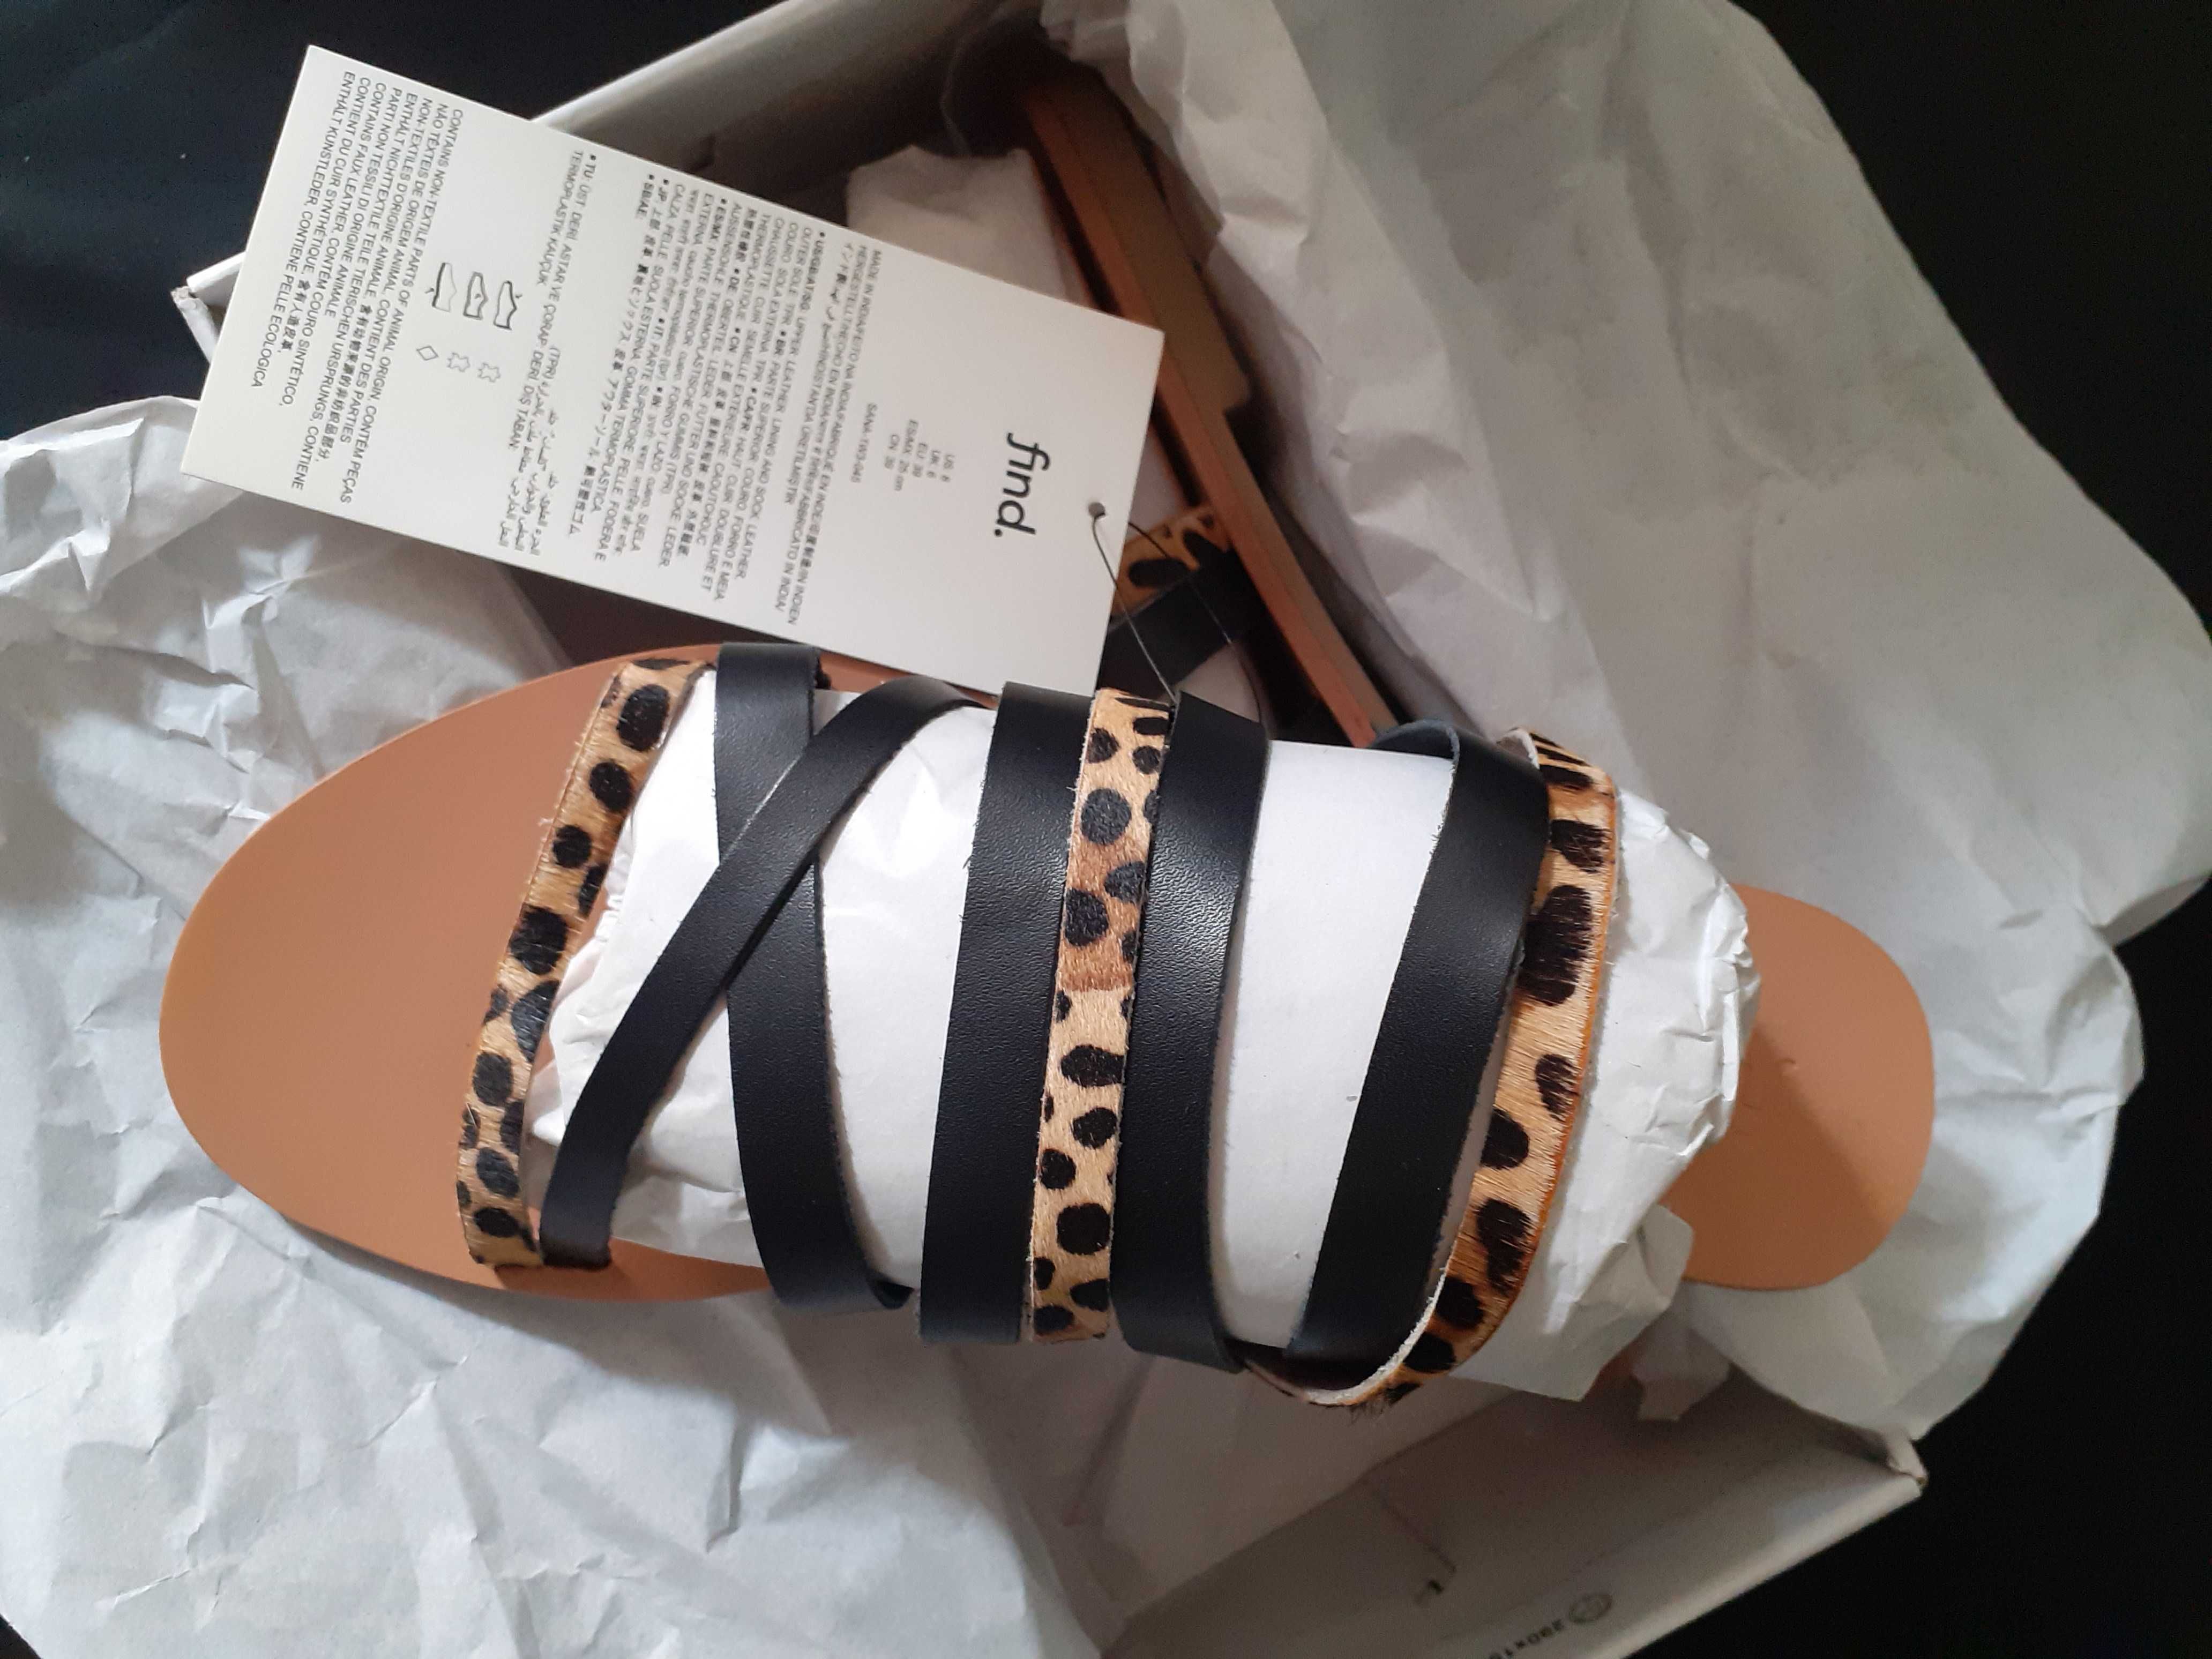 Sandale dama marimile 39 (25.5 si 26 cm) NOI in cutie cu etichete